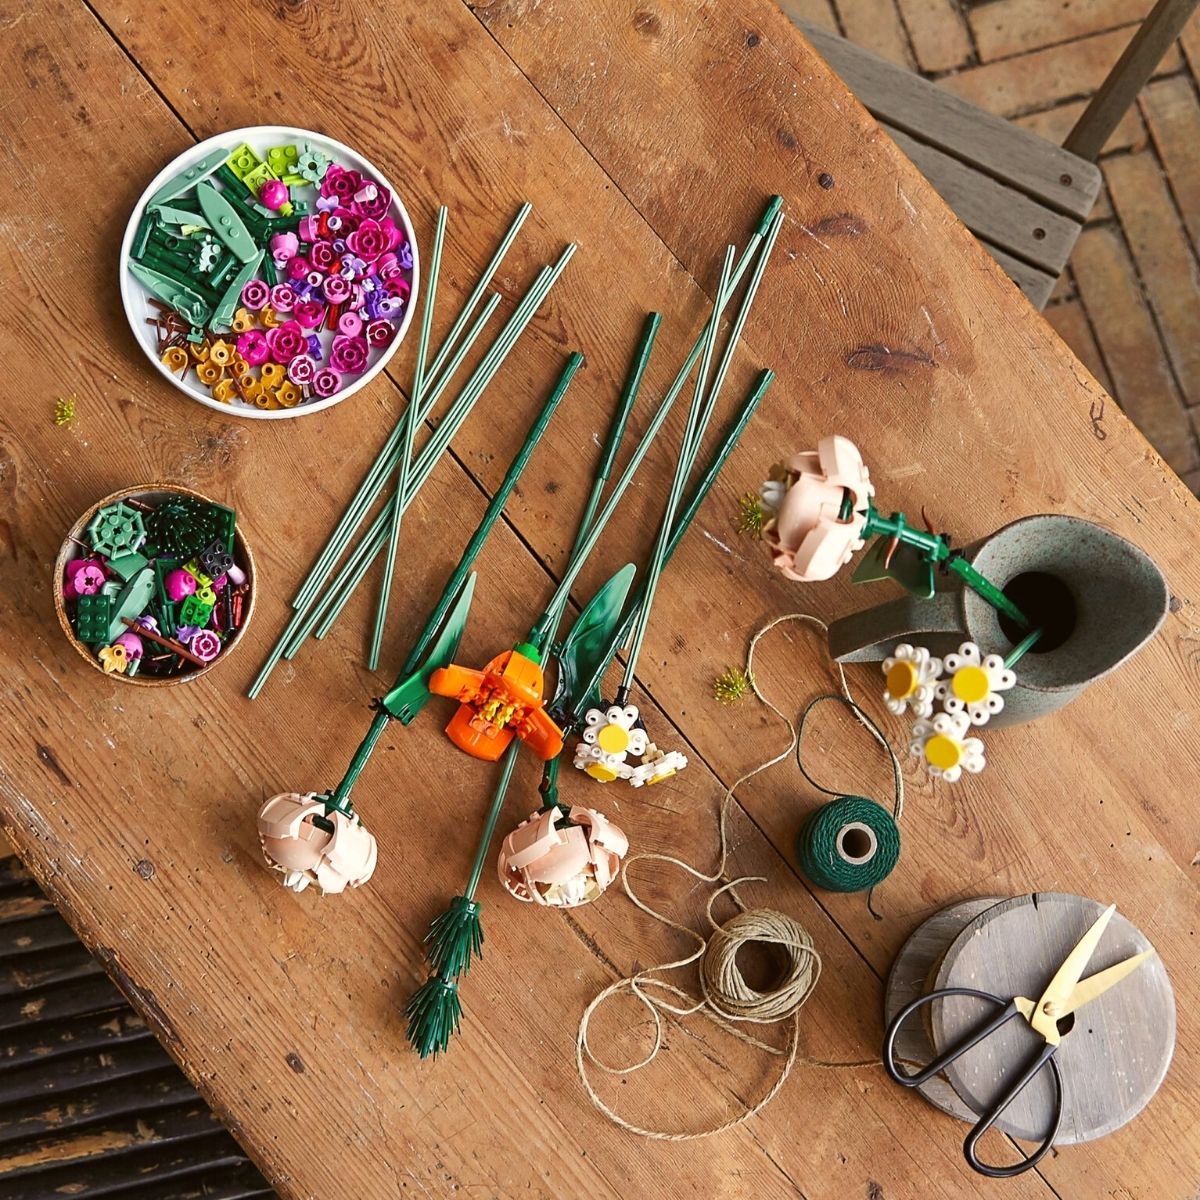 Lego Botanical Collection flower kit on Thursd